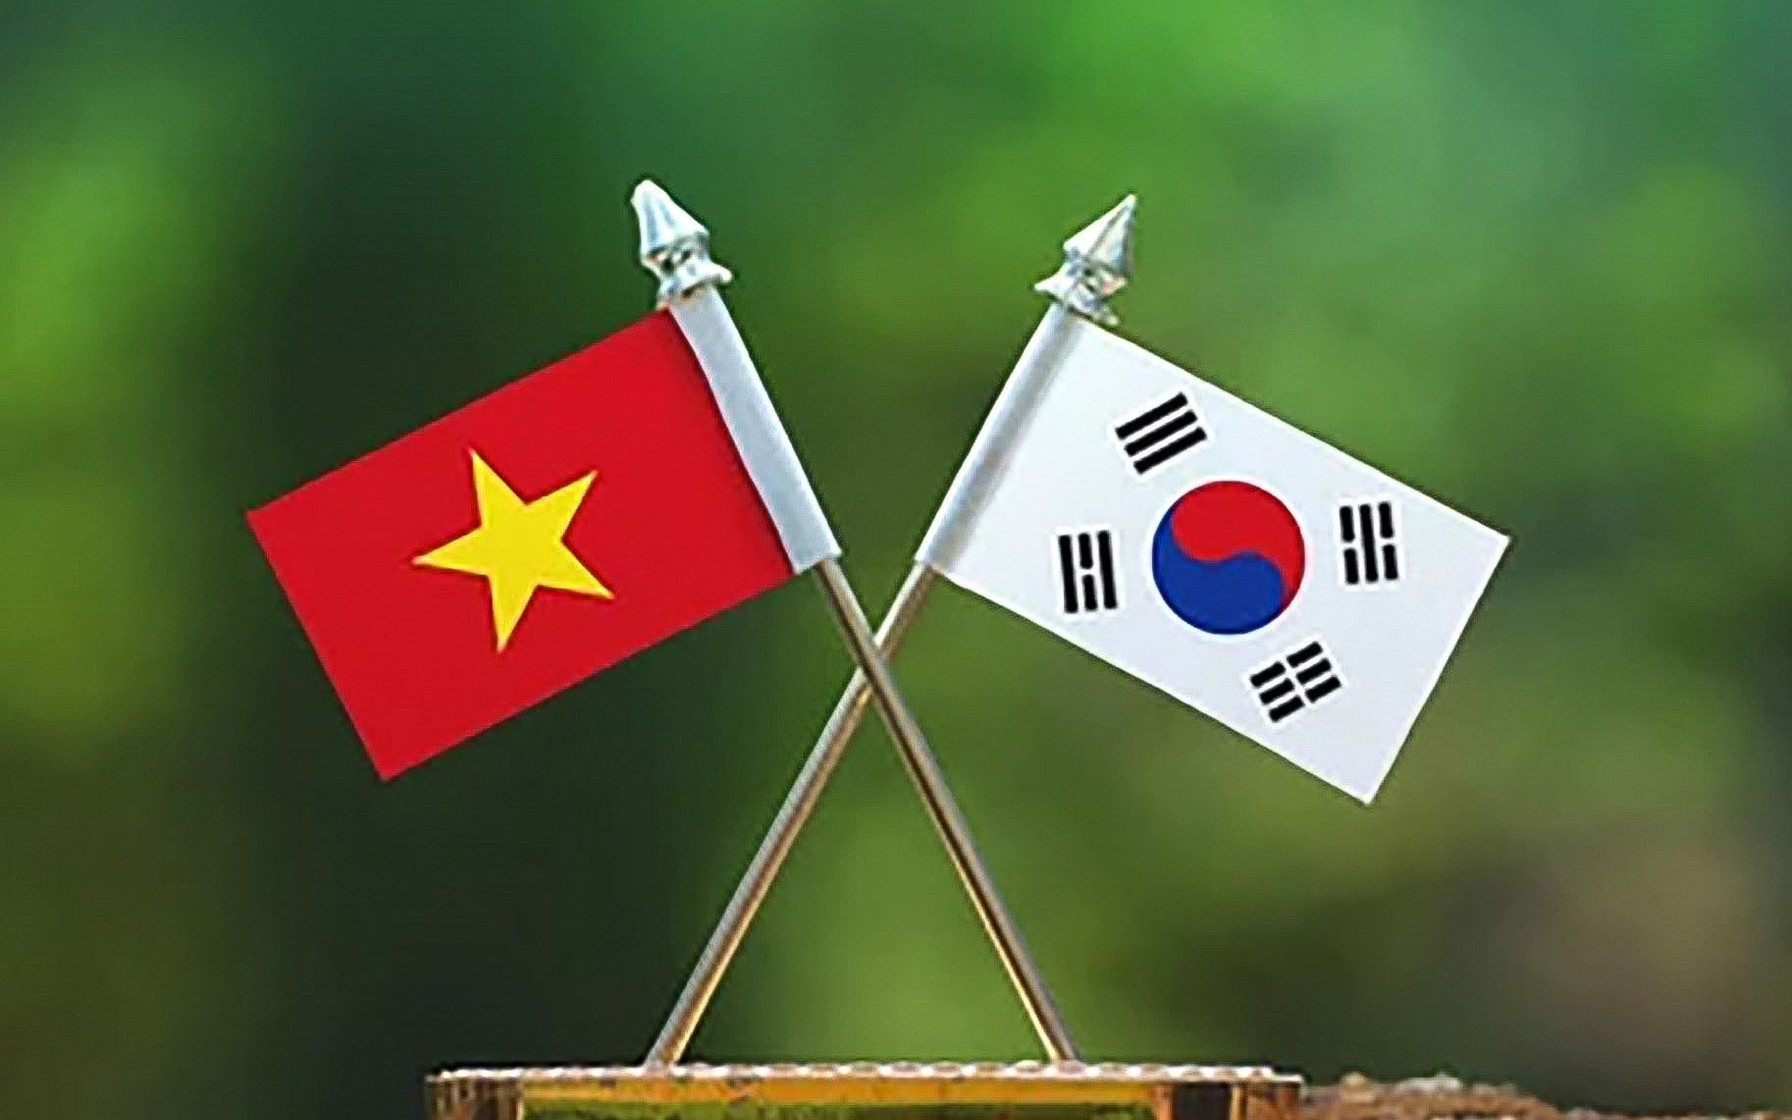 Quan hệ Việt Nam - Hàn Quốc: Kể từ khi thiết lập quan hệ ngoại giao, quan hệ Việt Nam - Hàn Quốc ngày càng phát triển trên nhiều lĩnh vực khác nhau. Quan hệ song phương đã đạt tới đỉnh cao trong lịch sử, đánh dấu một bước ngoặt quan trọng cho quan hệ đối tác kinh tế, văn hóa, giáo dục giữa hai quốc gia. Chúng ta hy vọng rằng quan hệ Việt Nam - Hàn Quốc sẽ tiếp tục phát triển tốt đẹp và cùng nhau đưa quan hệ vì một tương lai tốt đẹp hơn.